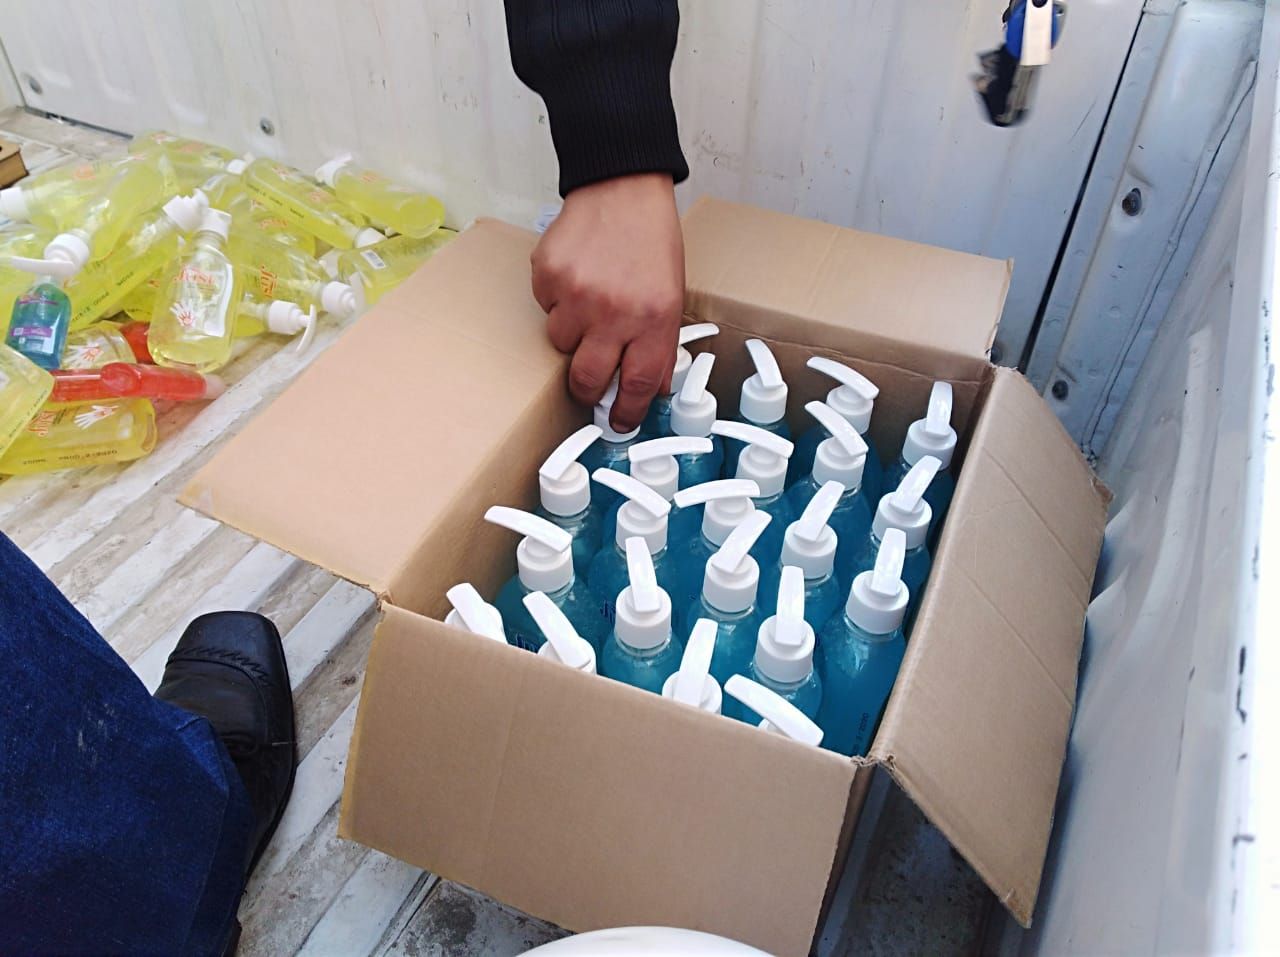 وزارة التموين تعلن عن إمكانية تبديل النقاط للحصول على زجاجات الكولونيا والمطهرات